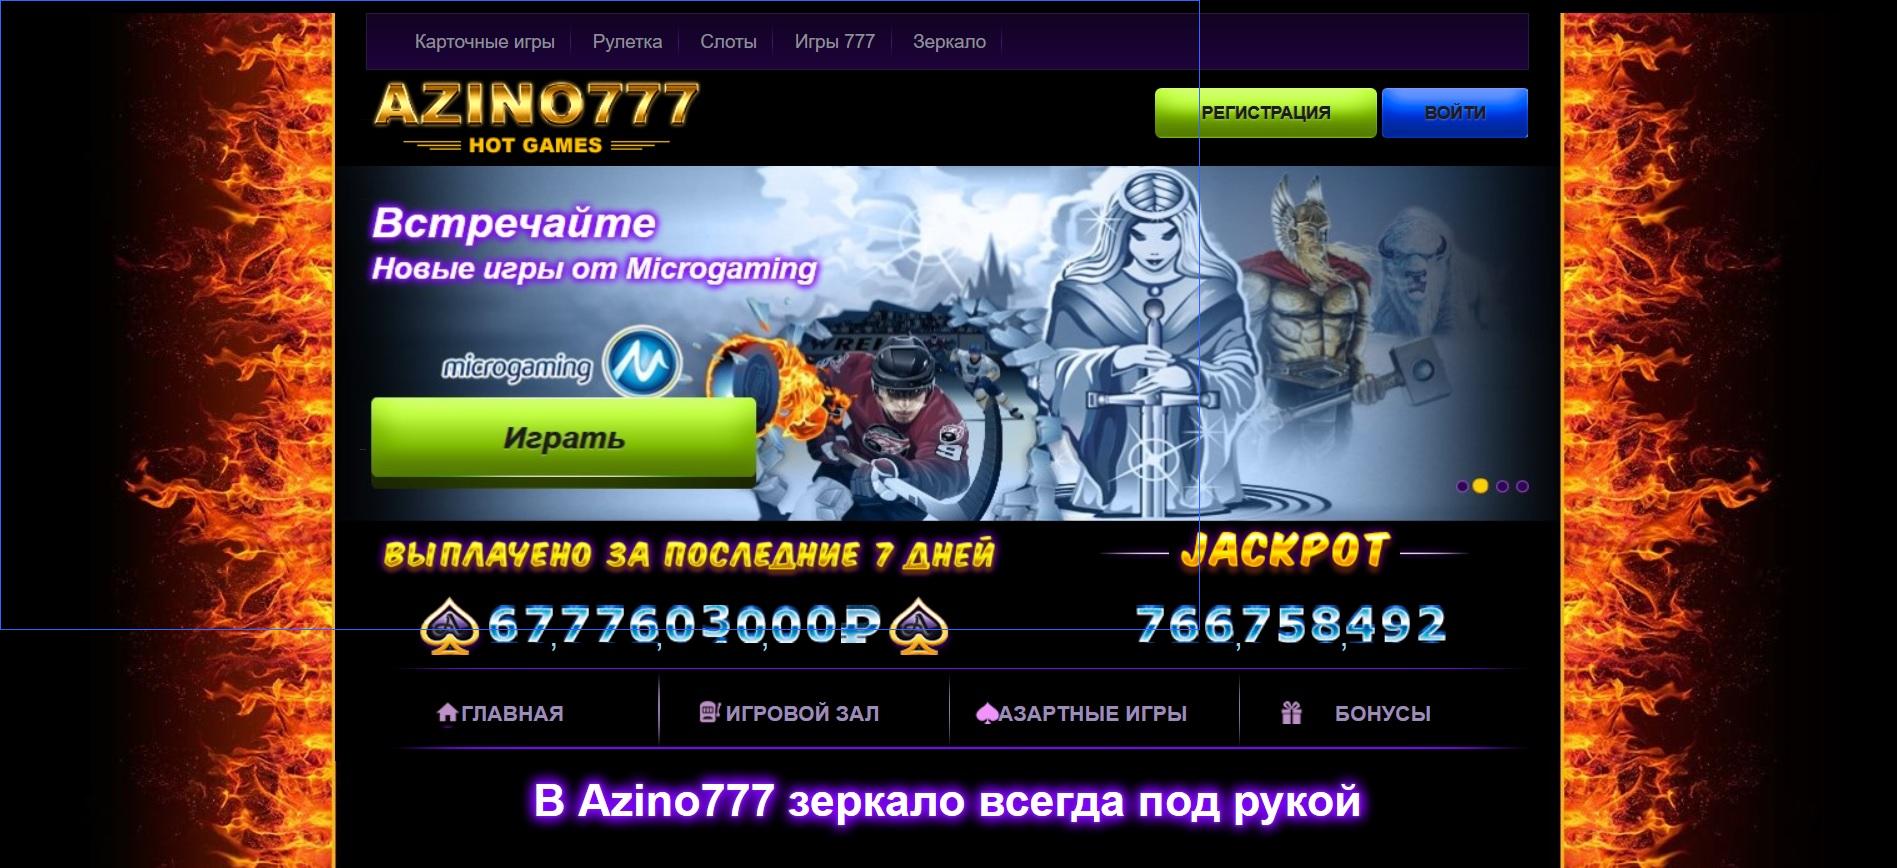 azino777 скачать приложение играть и выигрывать рф